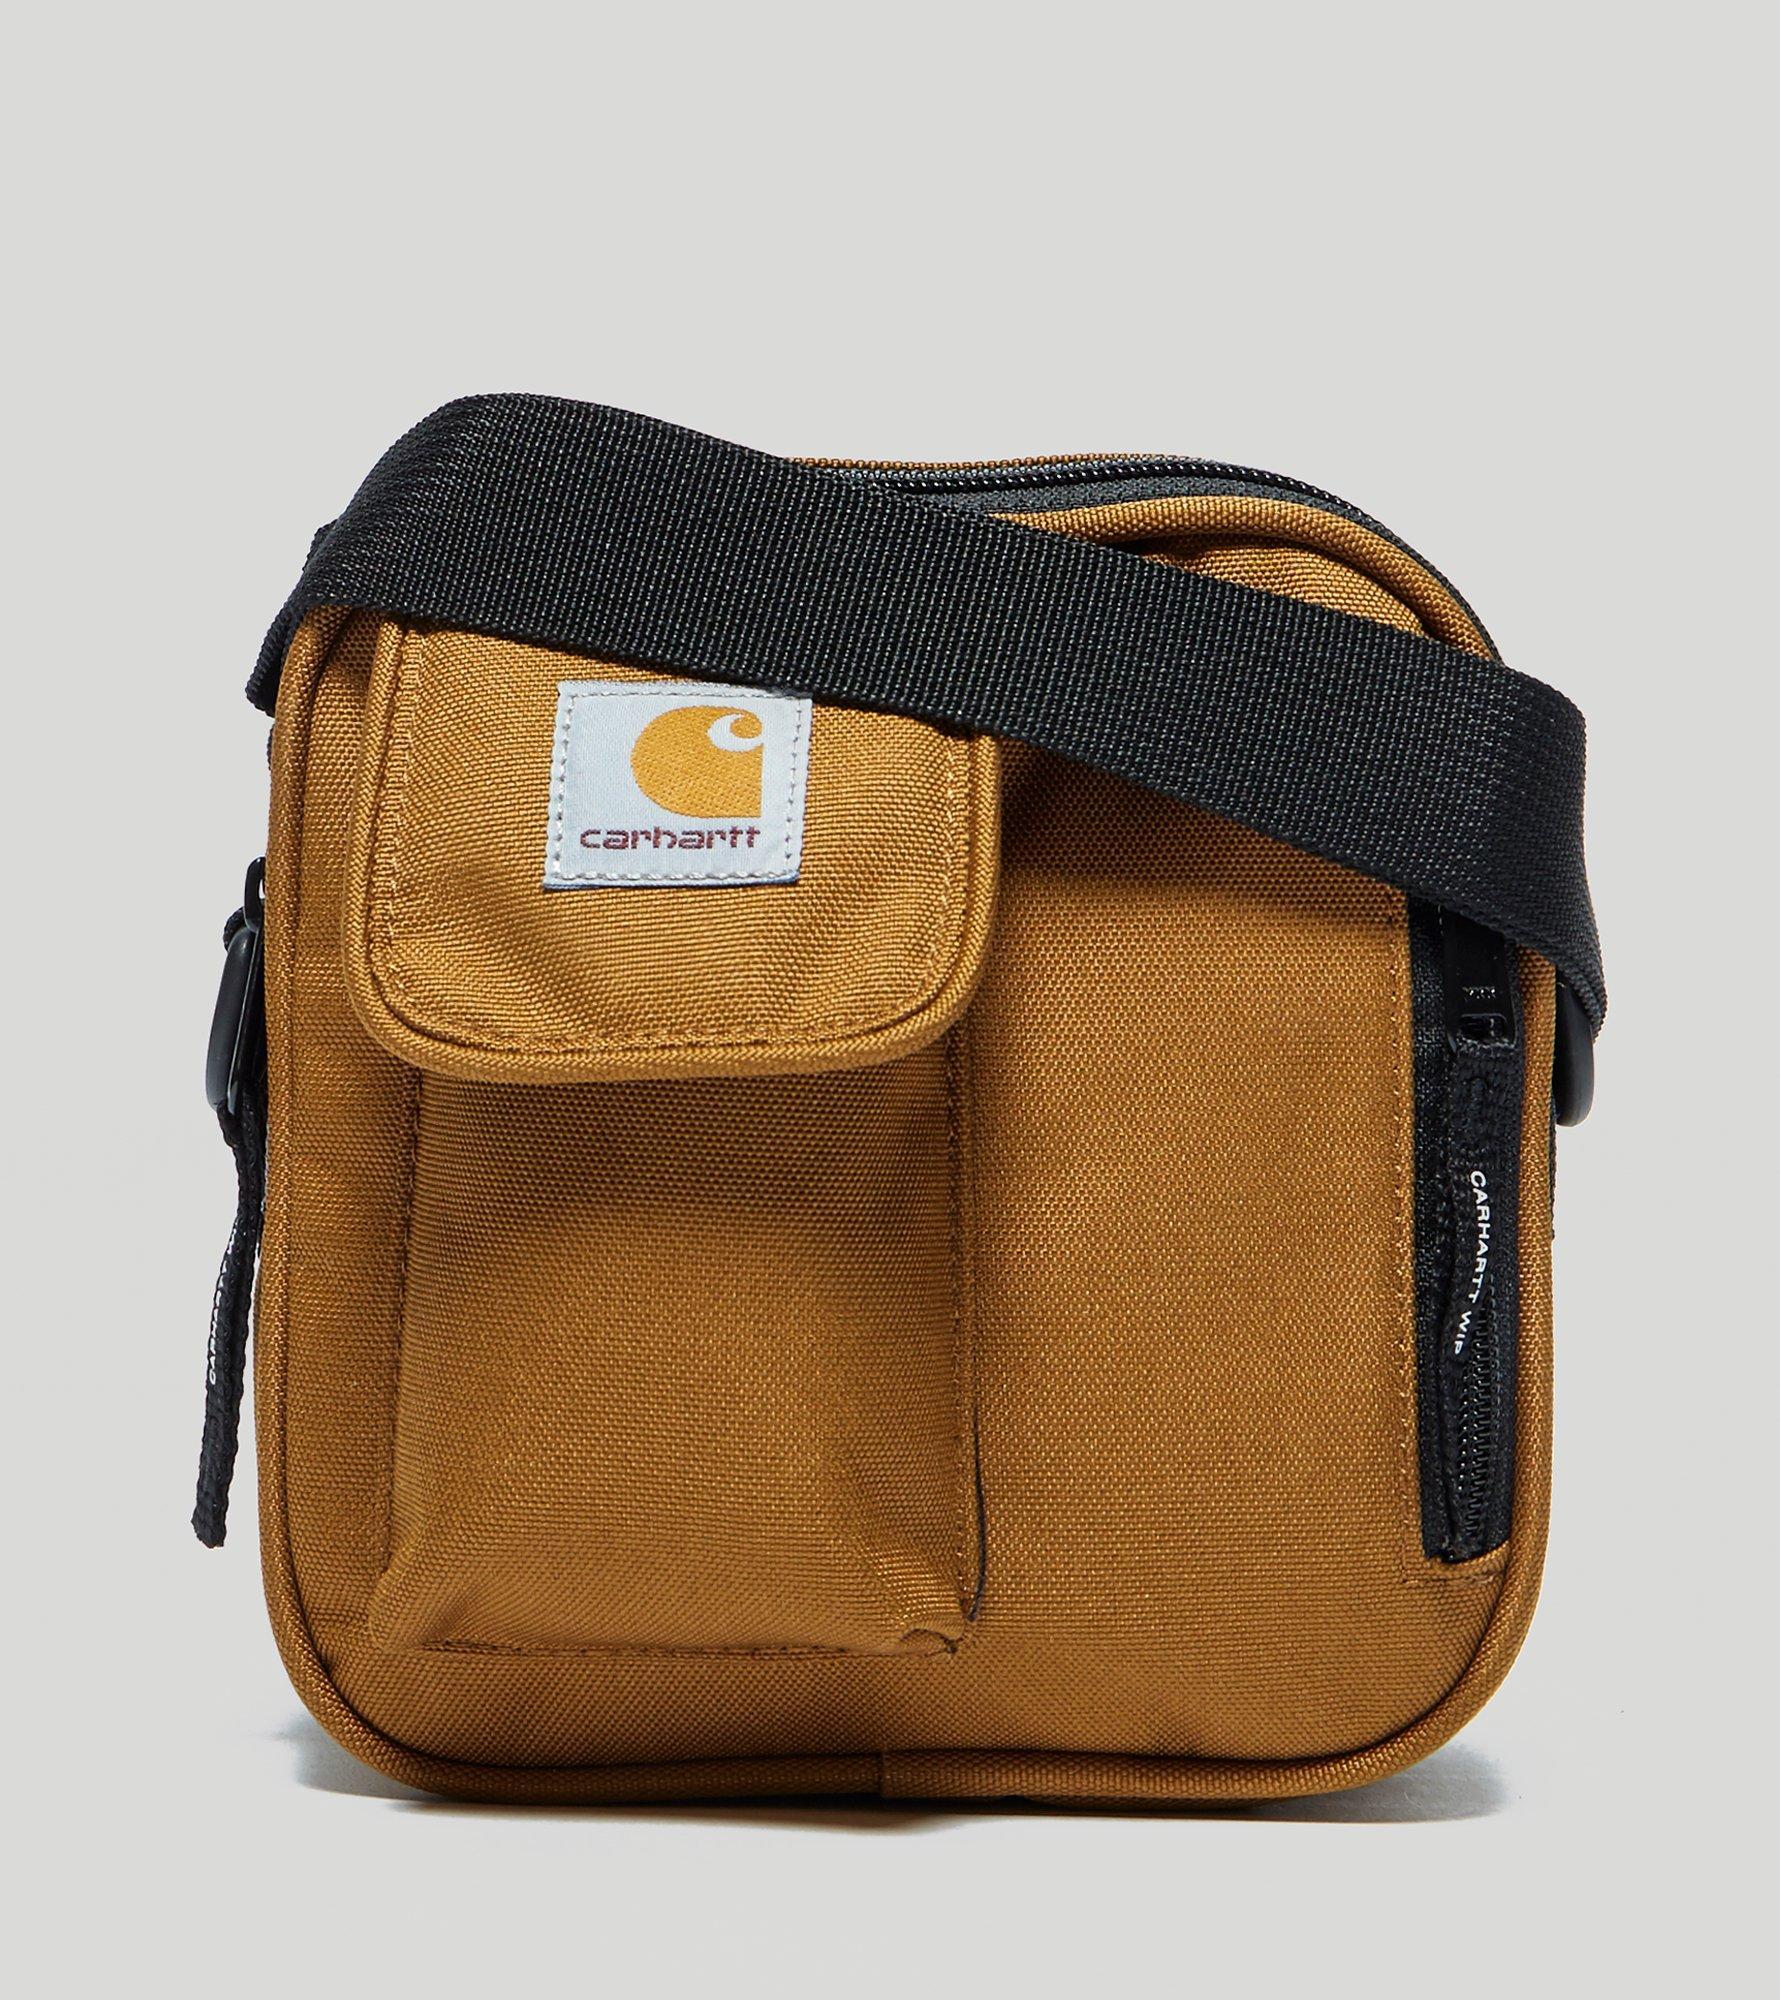 Lyst - Carhartt Wip Essential Side Bag in Brown for Men